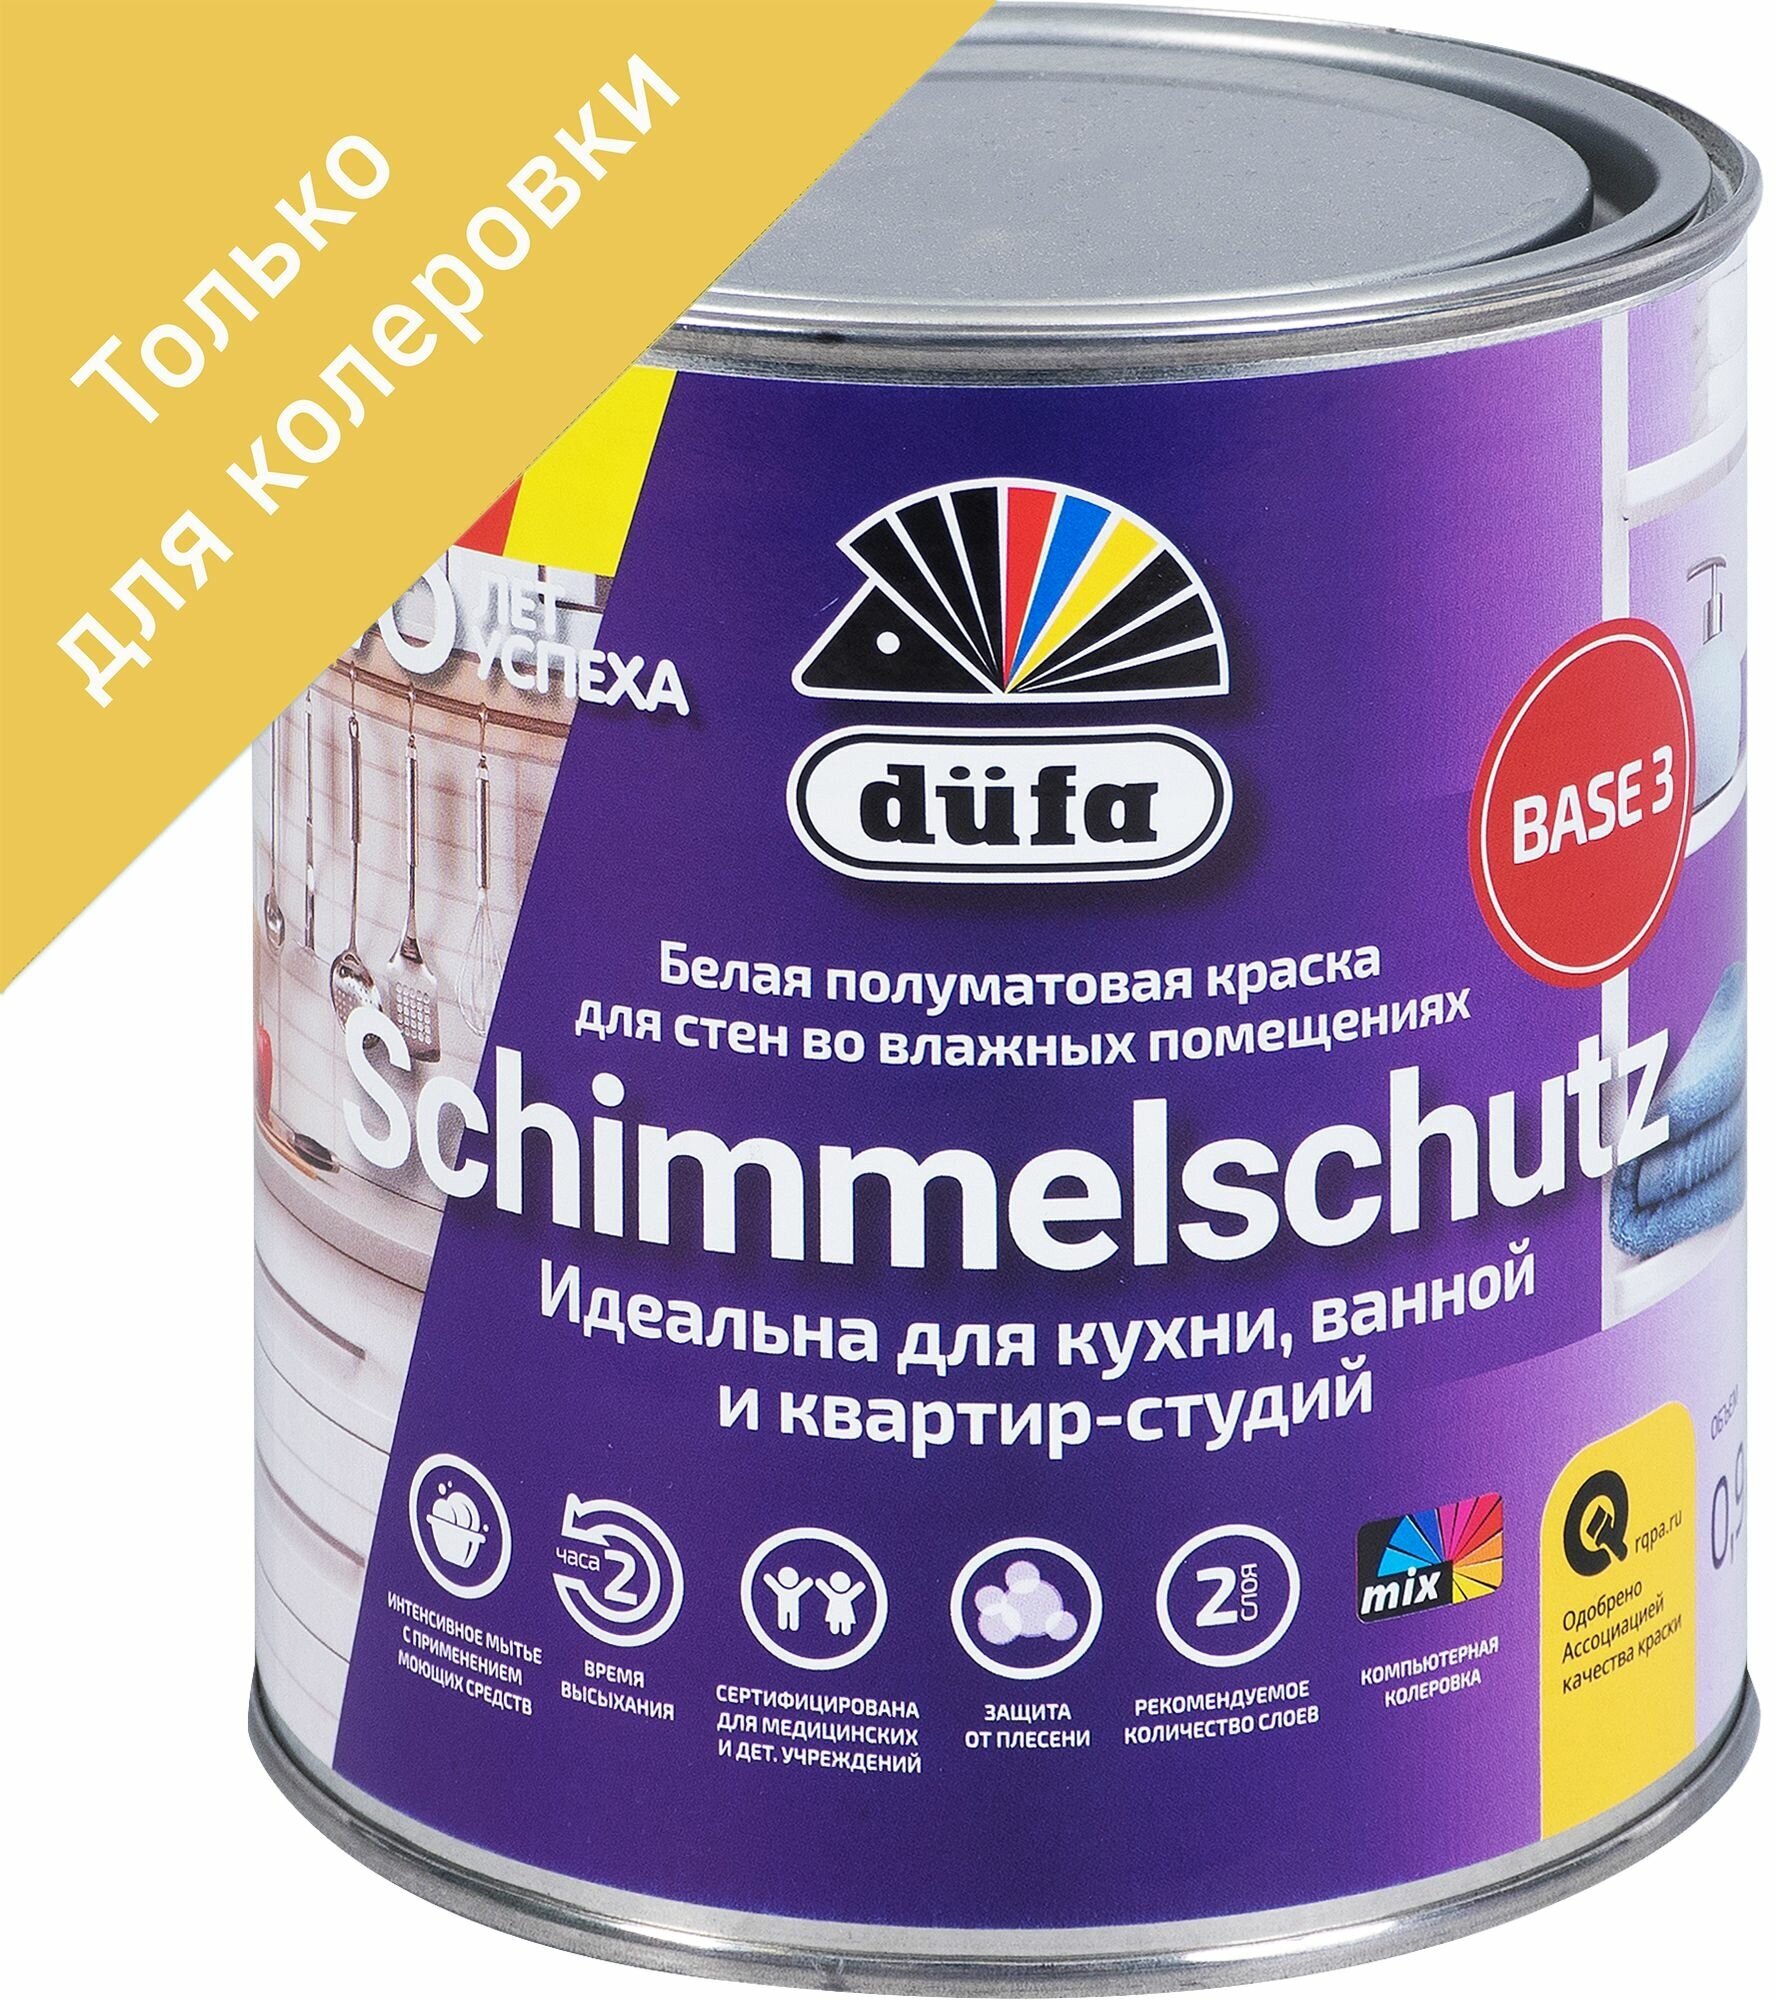 Краска для колеровки для стен и потолков Schimmelchutz прозрачная база 3 0.9 л